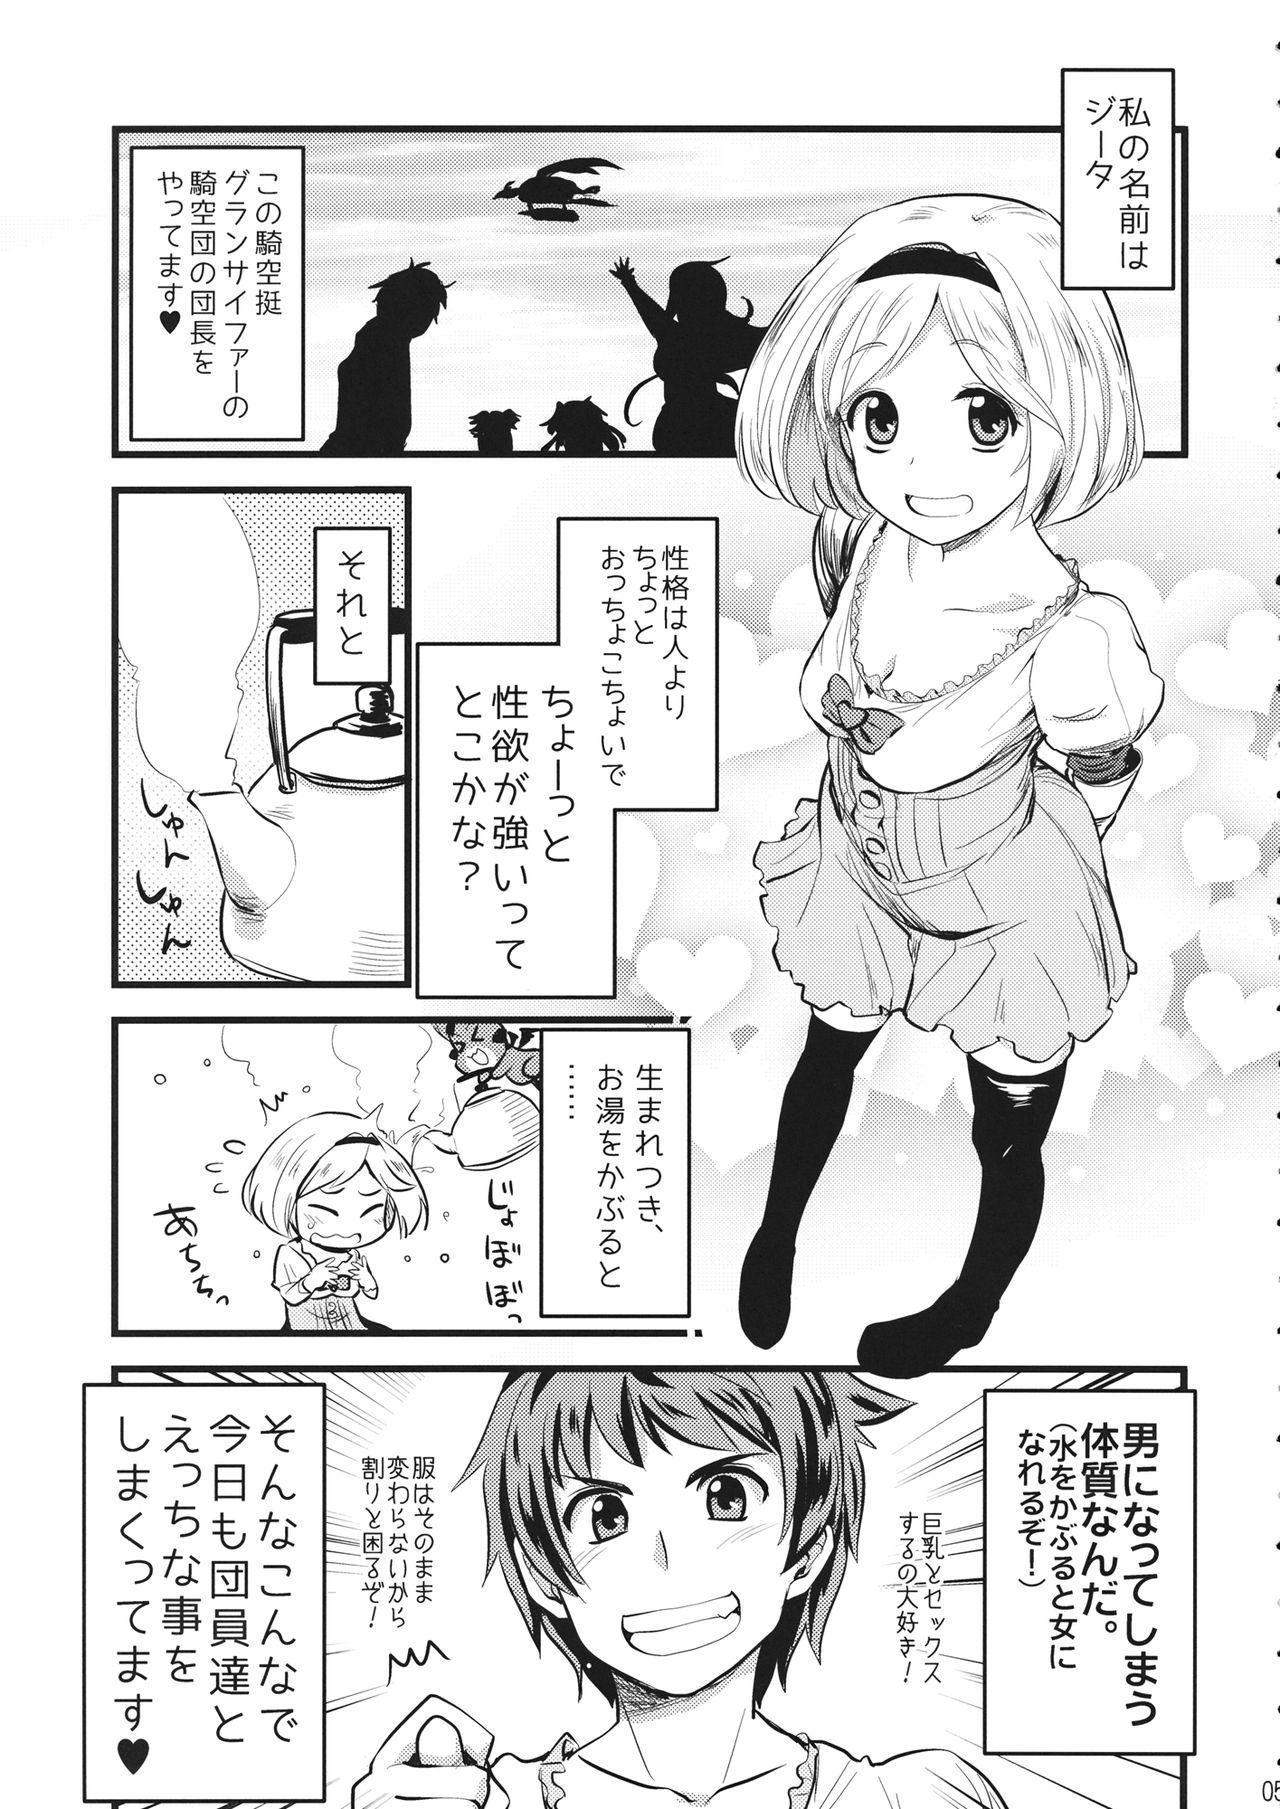 Girlnextdoor Mizu o Kaburu to Onna ni Nacchau Fuzaketa Taishitsu. - Granblue fantasy Strange - Page 4